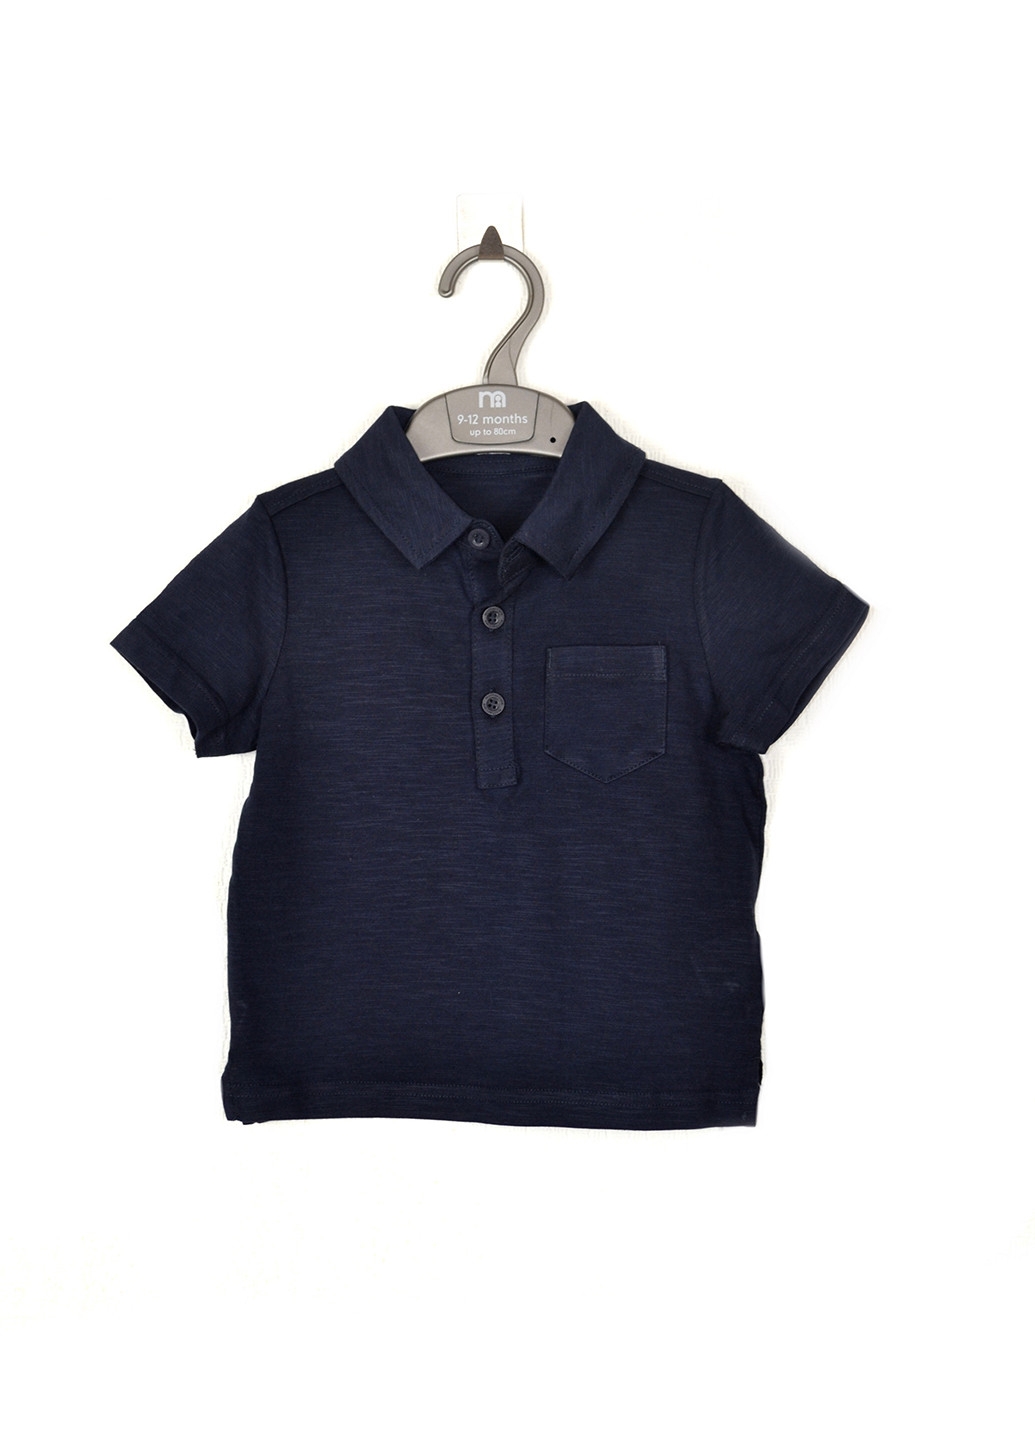 Темно-синяя детская футболка-поло для мальчика Mothercare однотонная